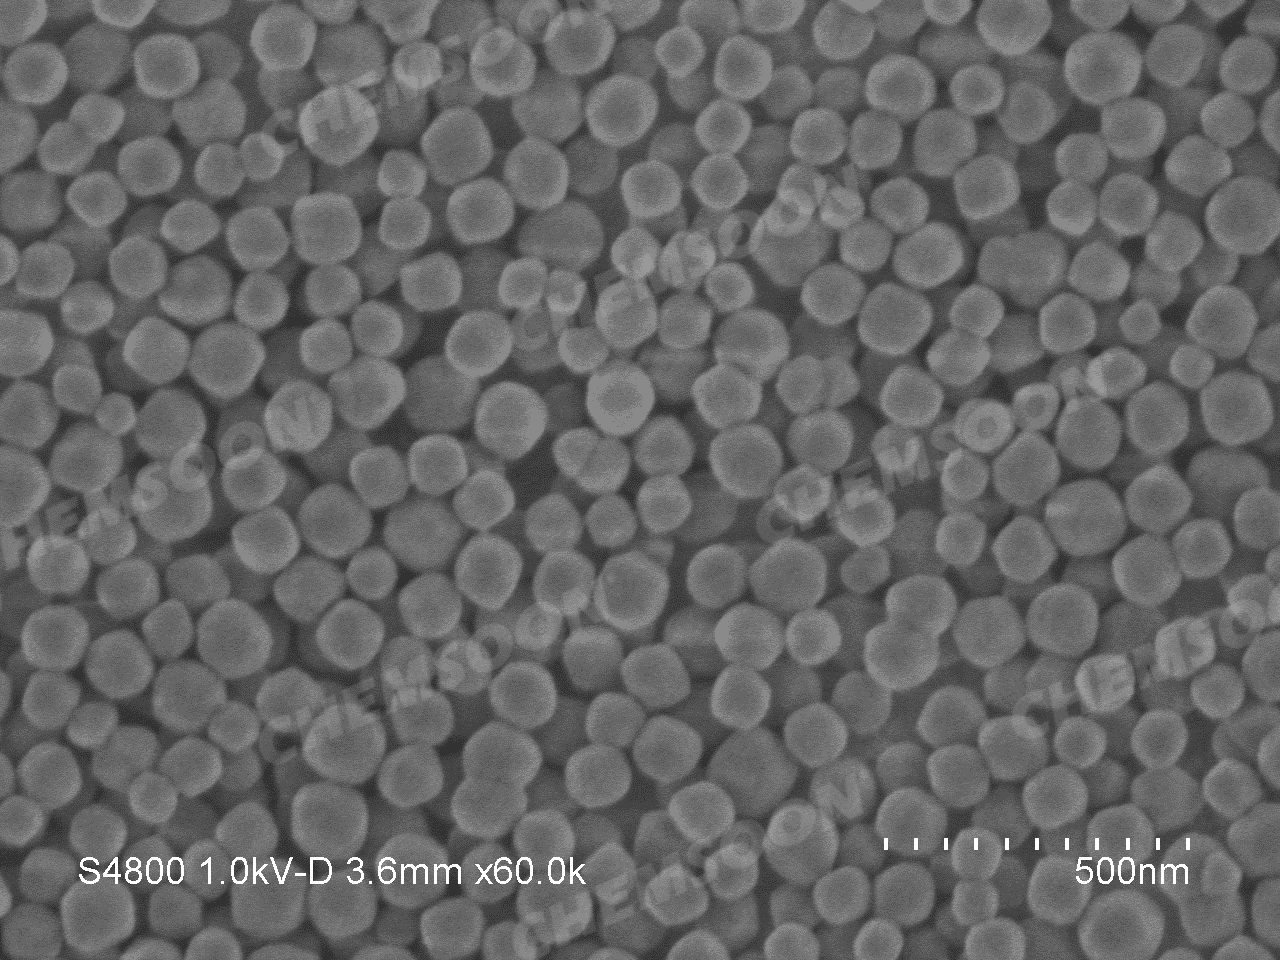 SEM-UIO-66 nanoparticles s 